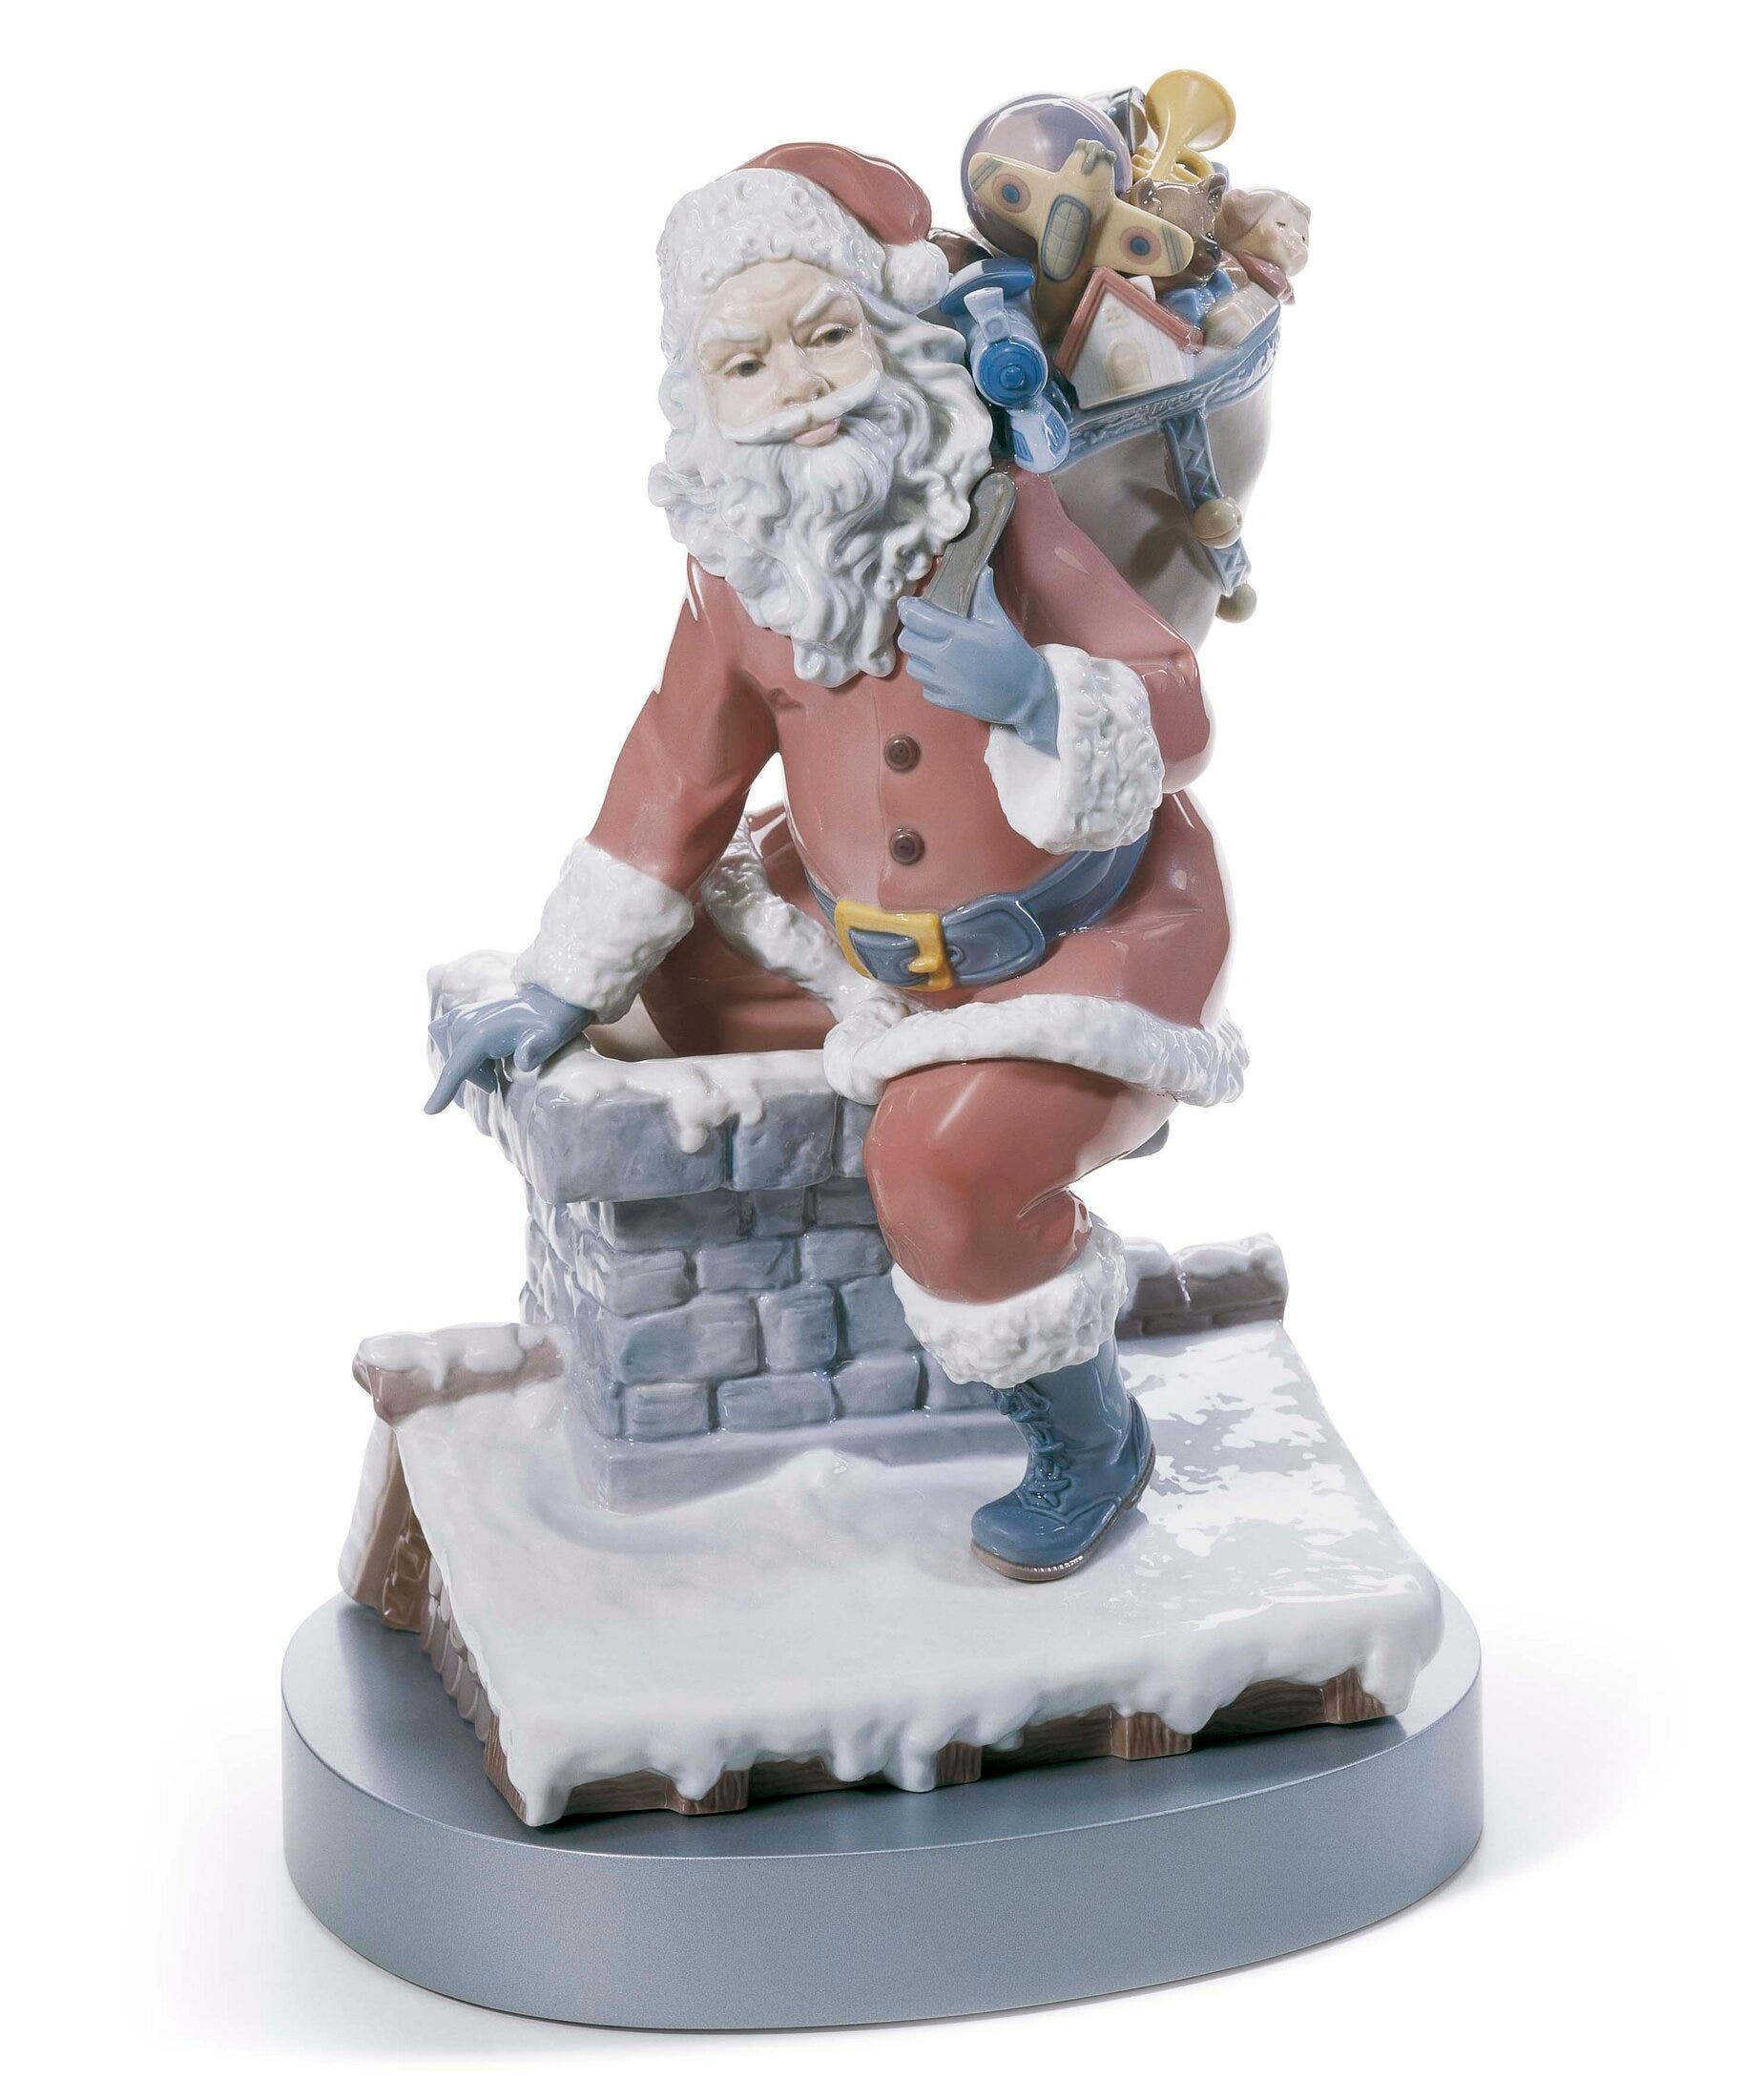 Figurina di Babbo Natale giù dal camino. Edizione limitata